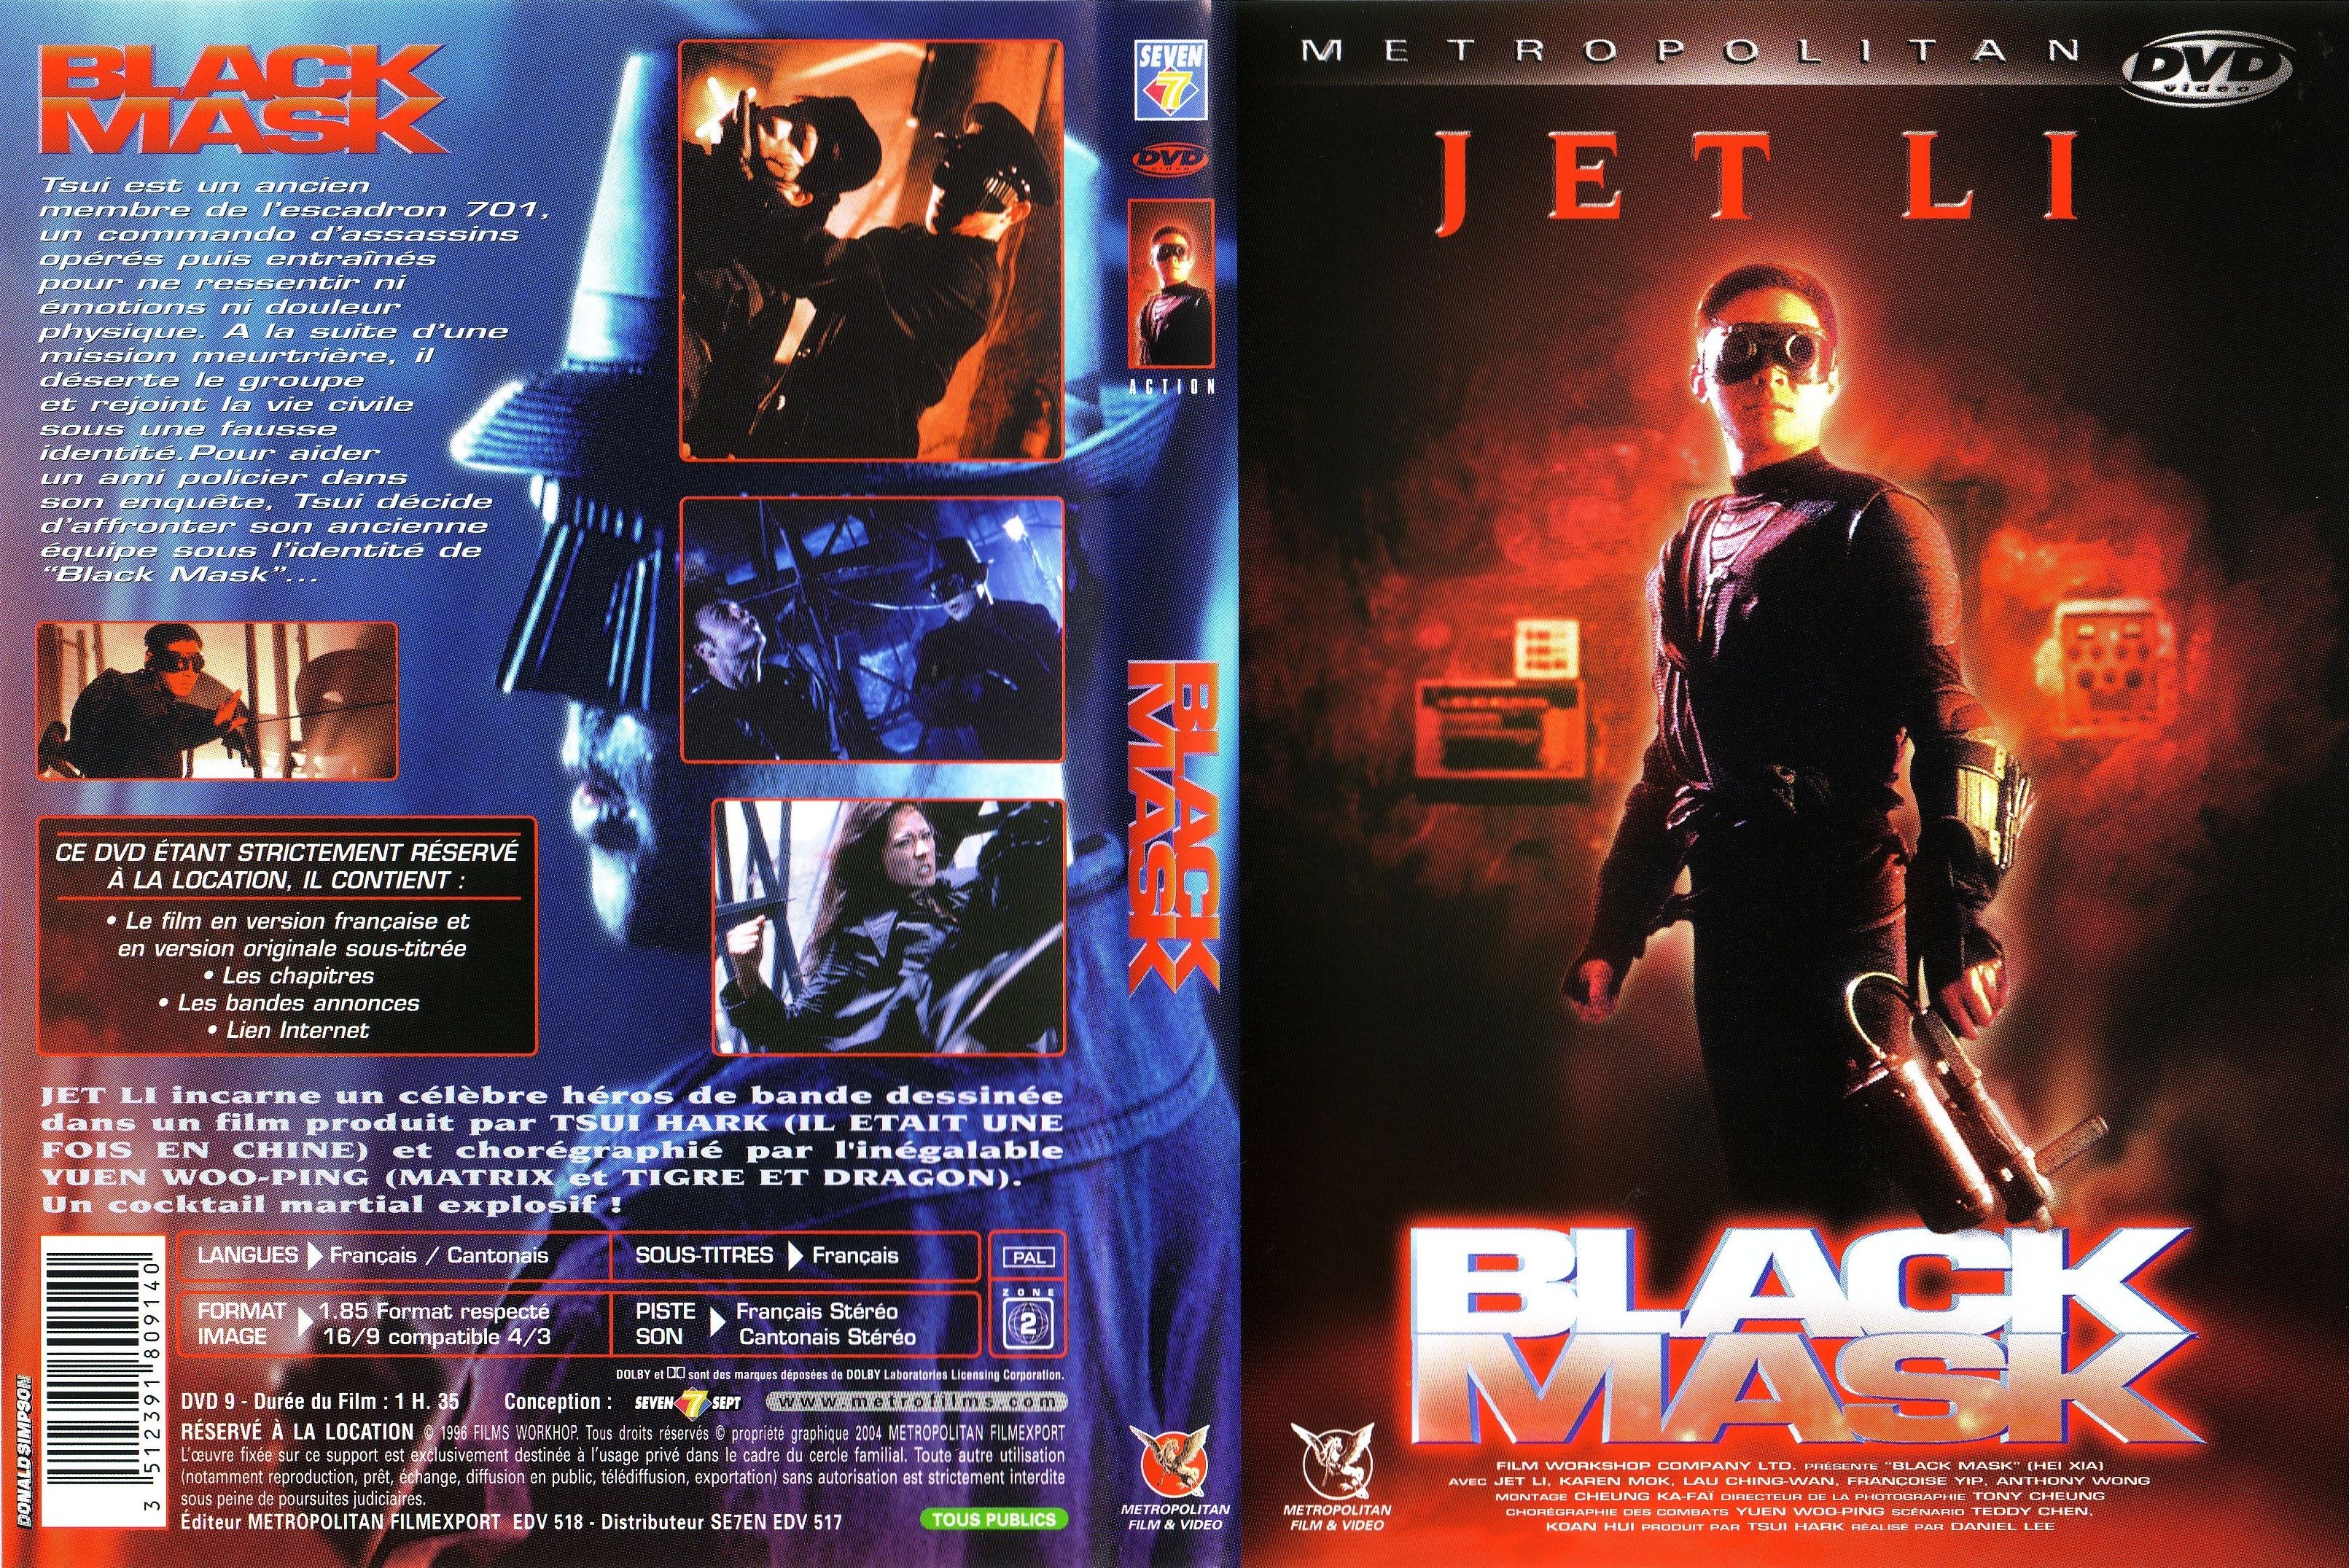 Jaquette DVD Black mask v2